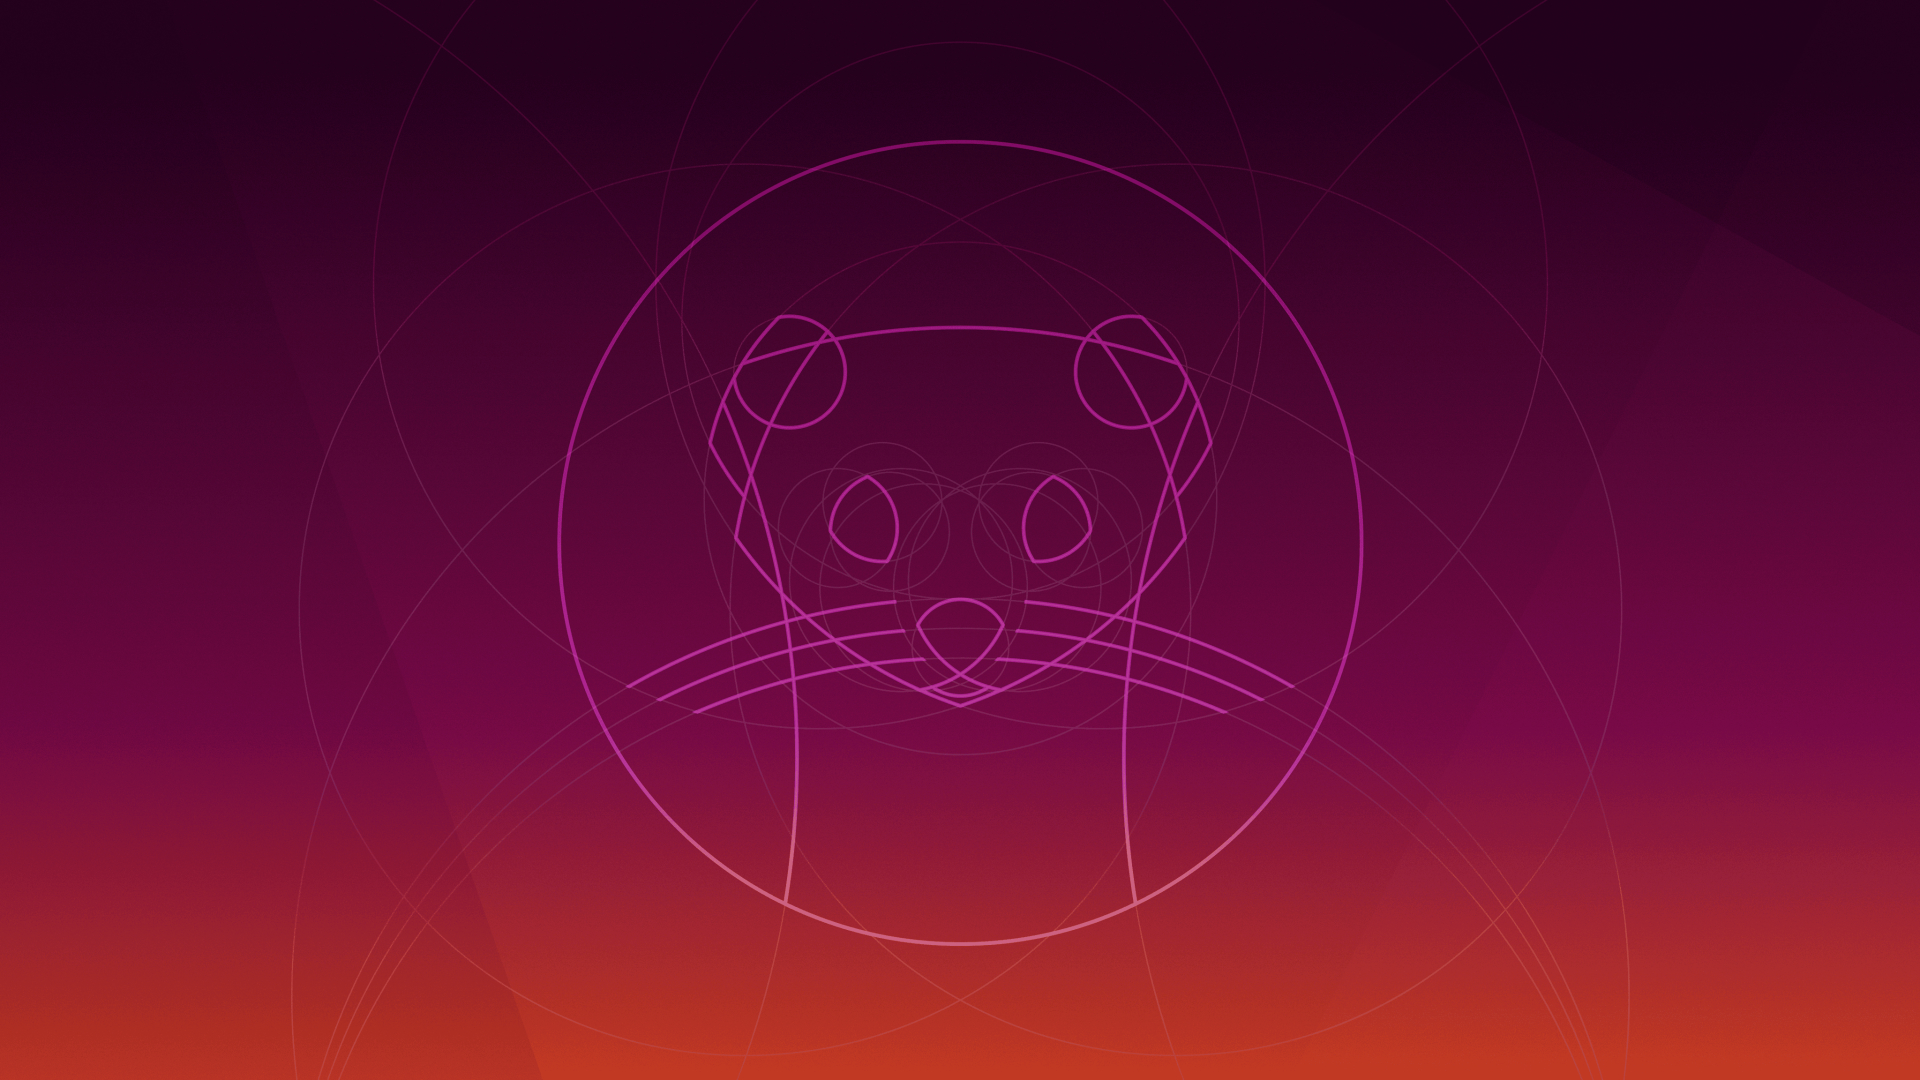 ubuntu fond d'écran télécharger,rouge,violet,rose,cercle,police de caractère